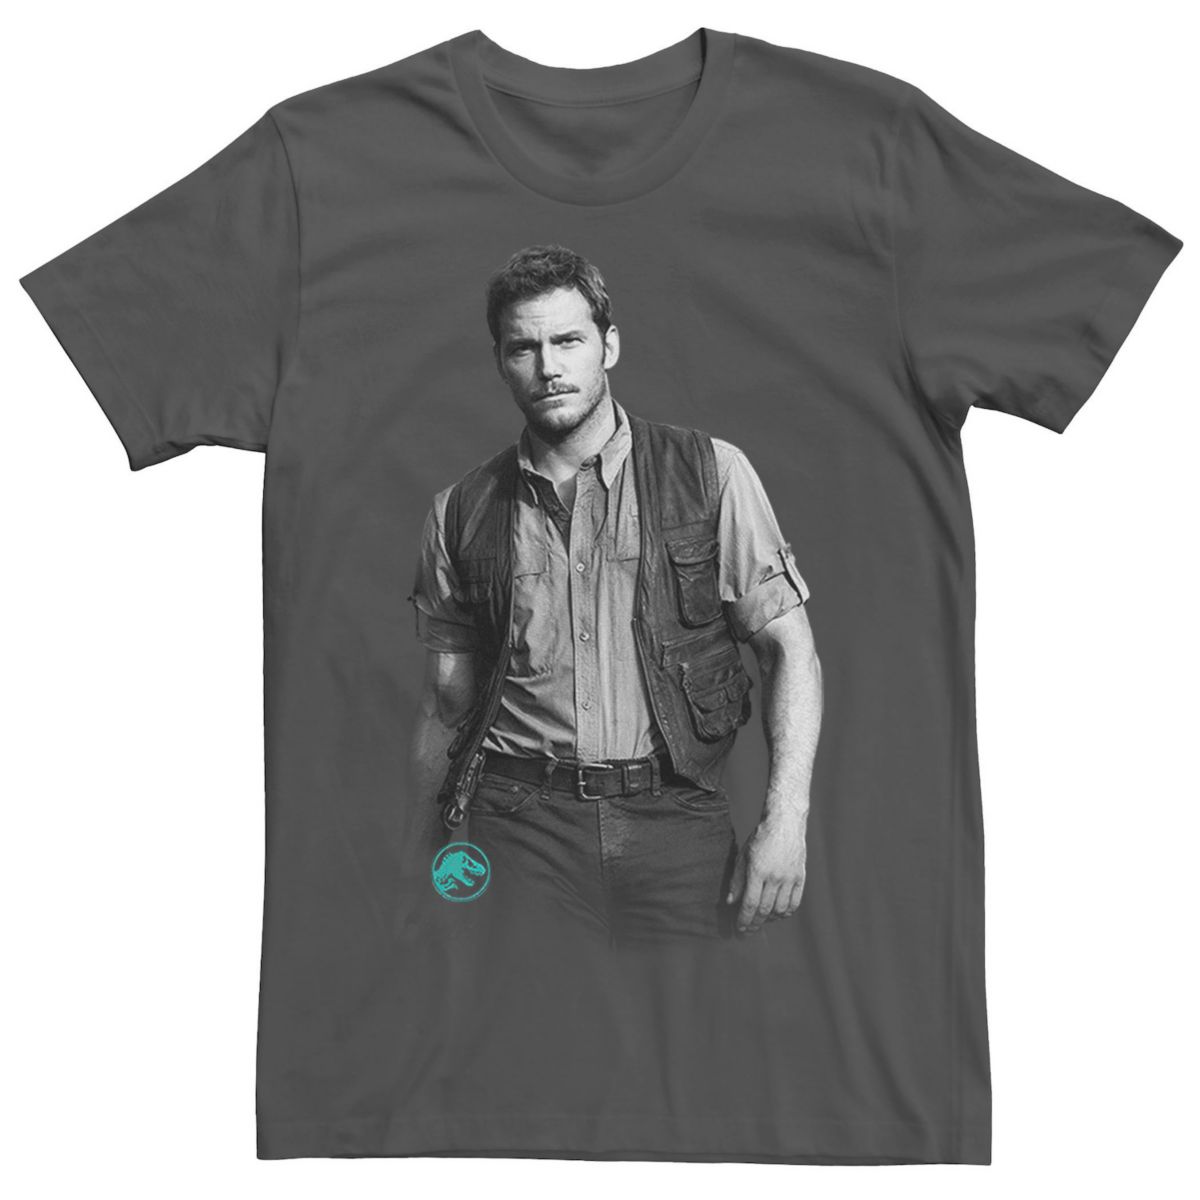 Мужская футболка с надписью "Мир юрского периода" Chris Pratt Swag Licensed Character